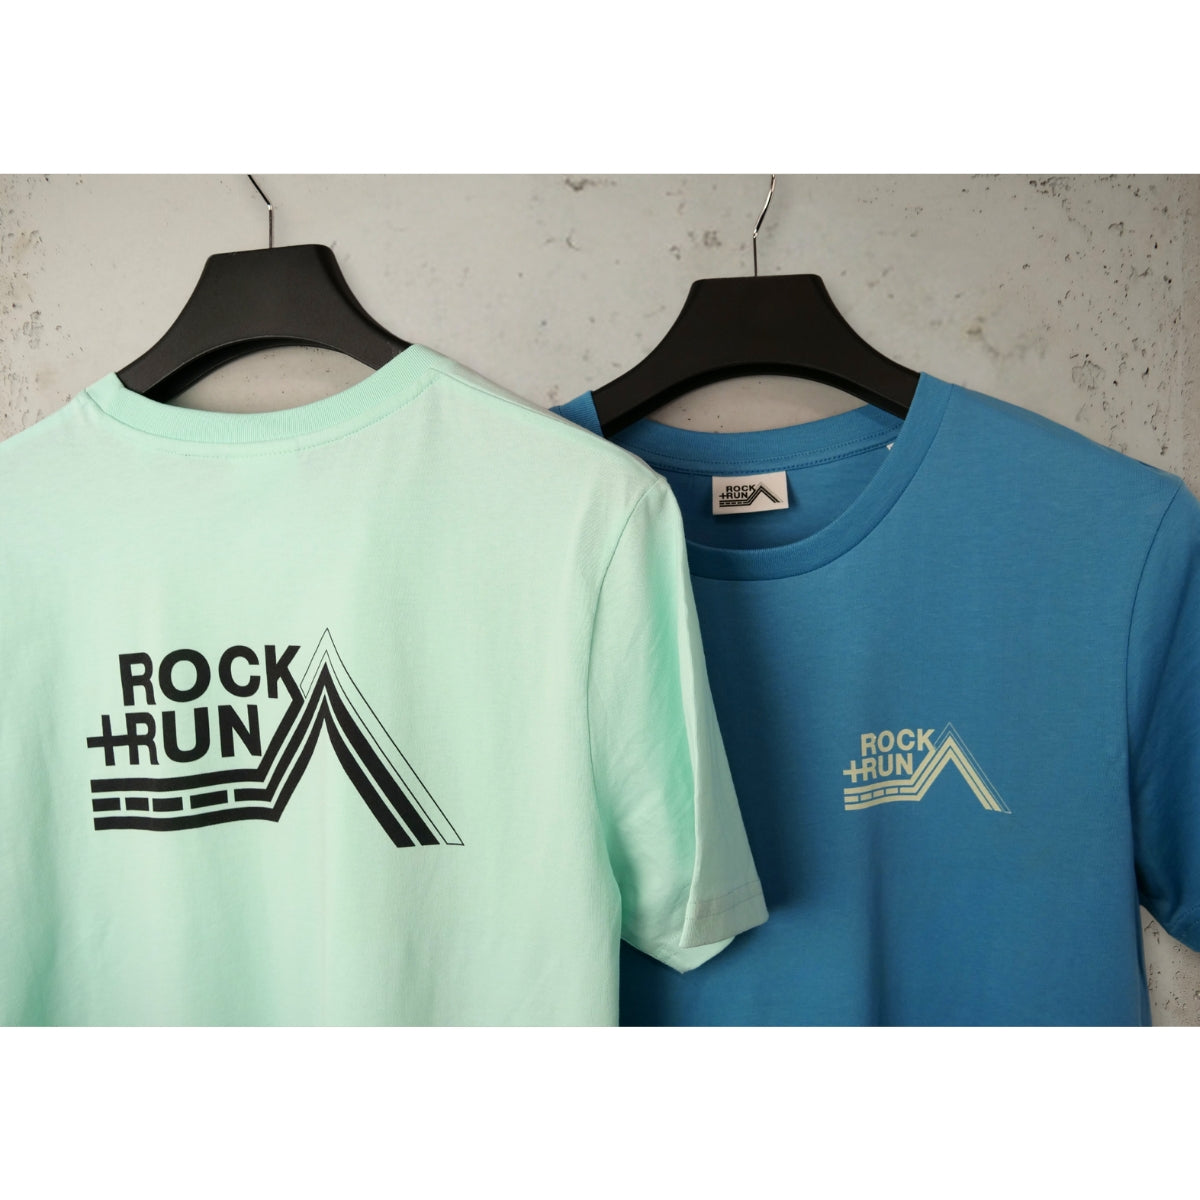 Rock+Run T-Shirt - Caribbean Blue and Atlantic Blue